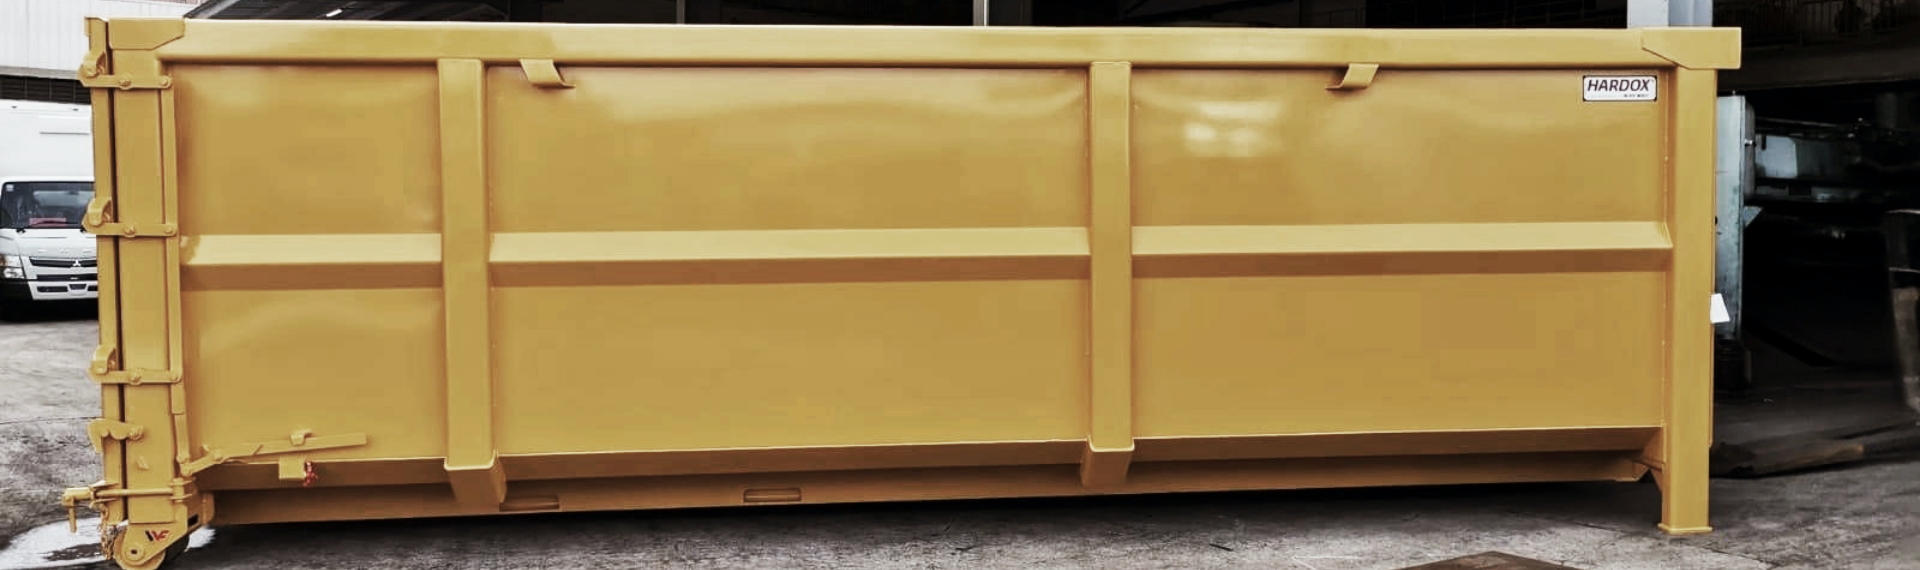 Um elegante contêiner amarelo para resíduos feito com o aço Hardox® HiAce.